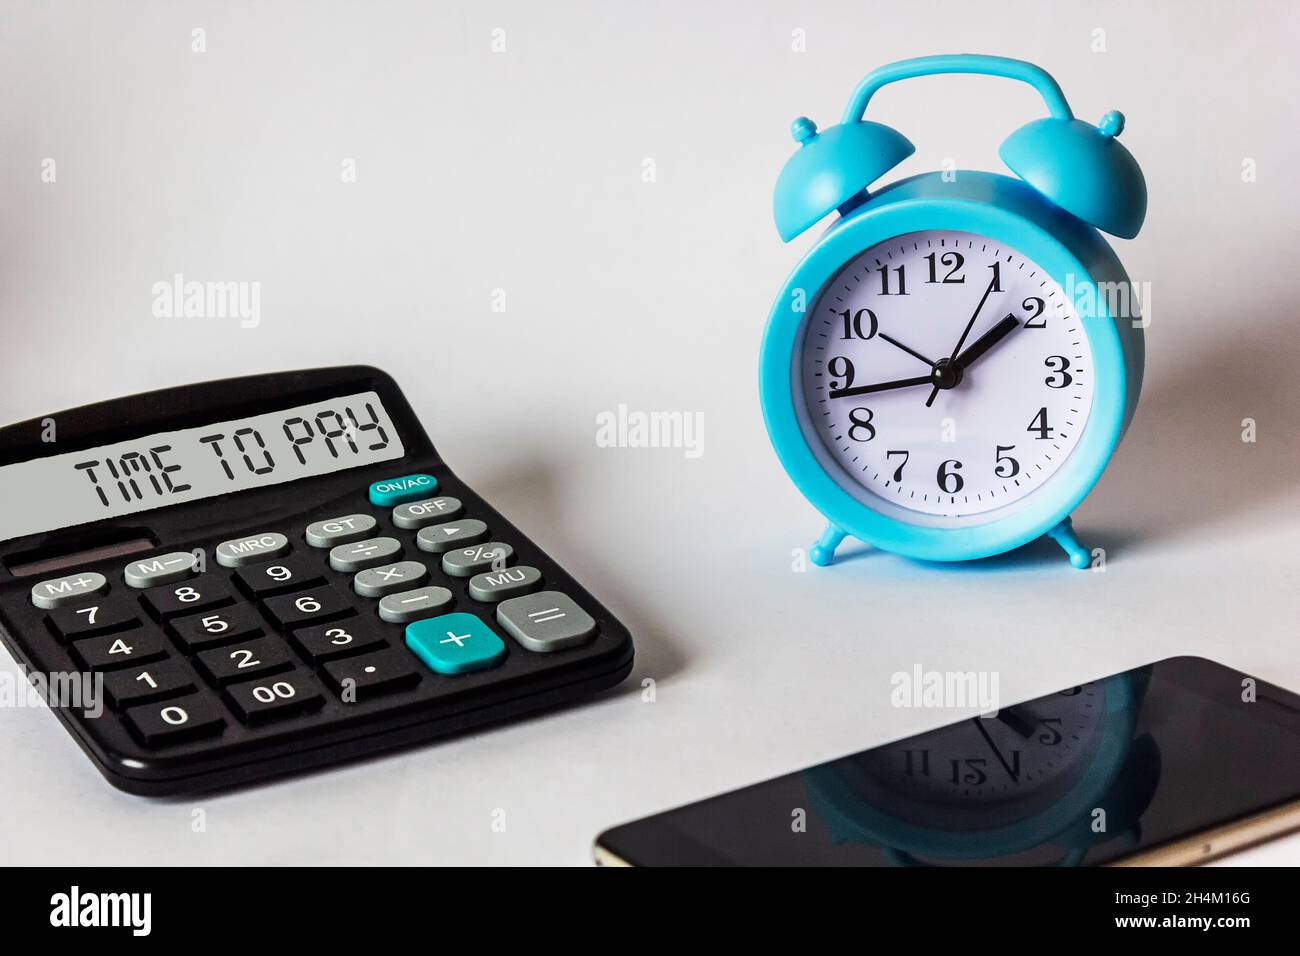 Testo Time to Pay sul display della calcolatrice, vicino alla sveglia e allo smartphone. Concetto commerciale e finanziario Foto Stock